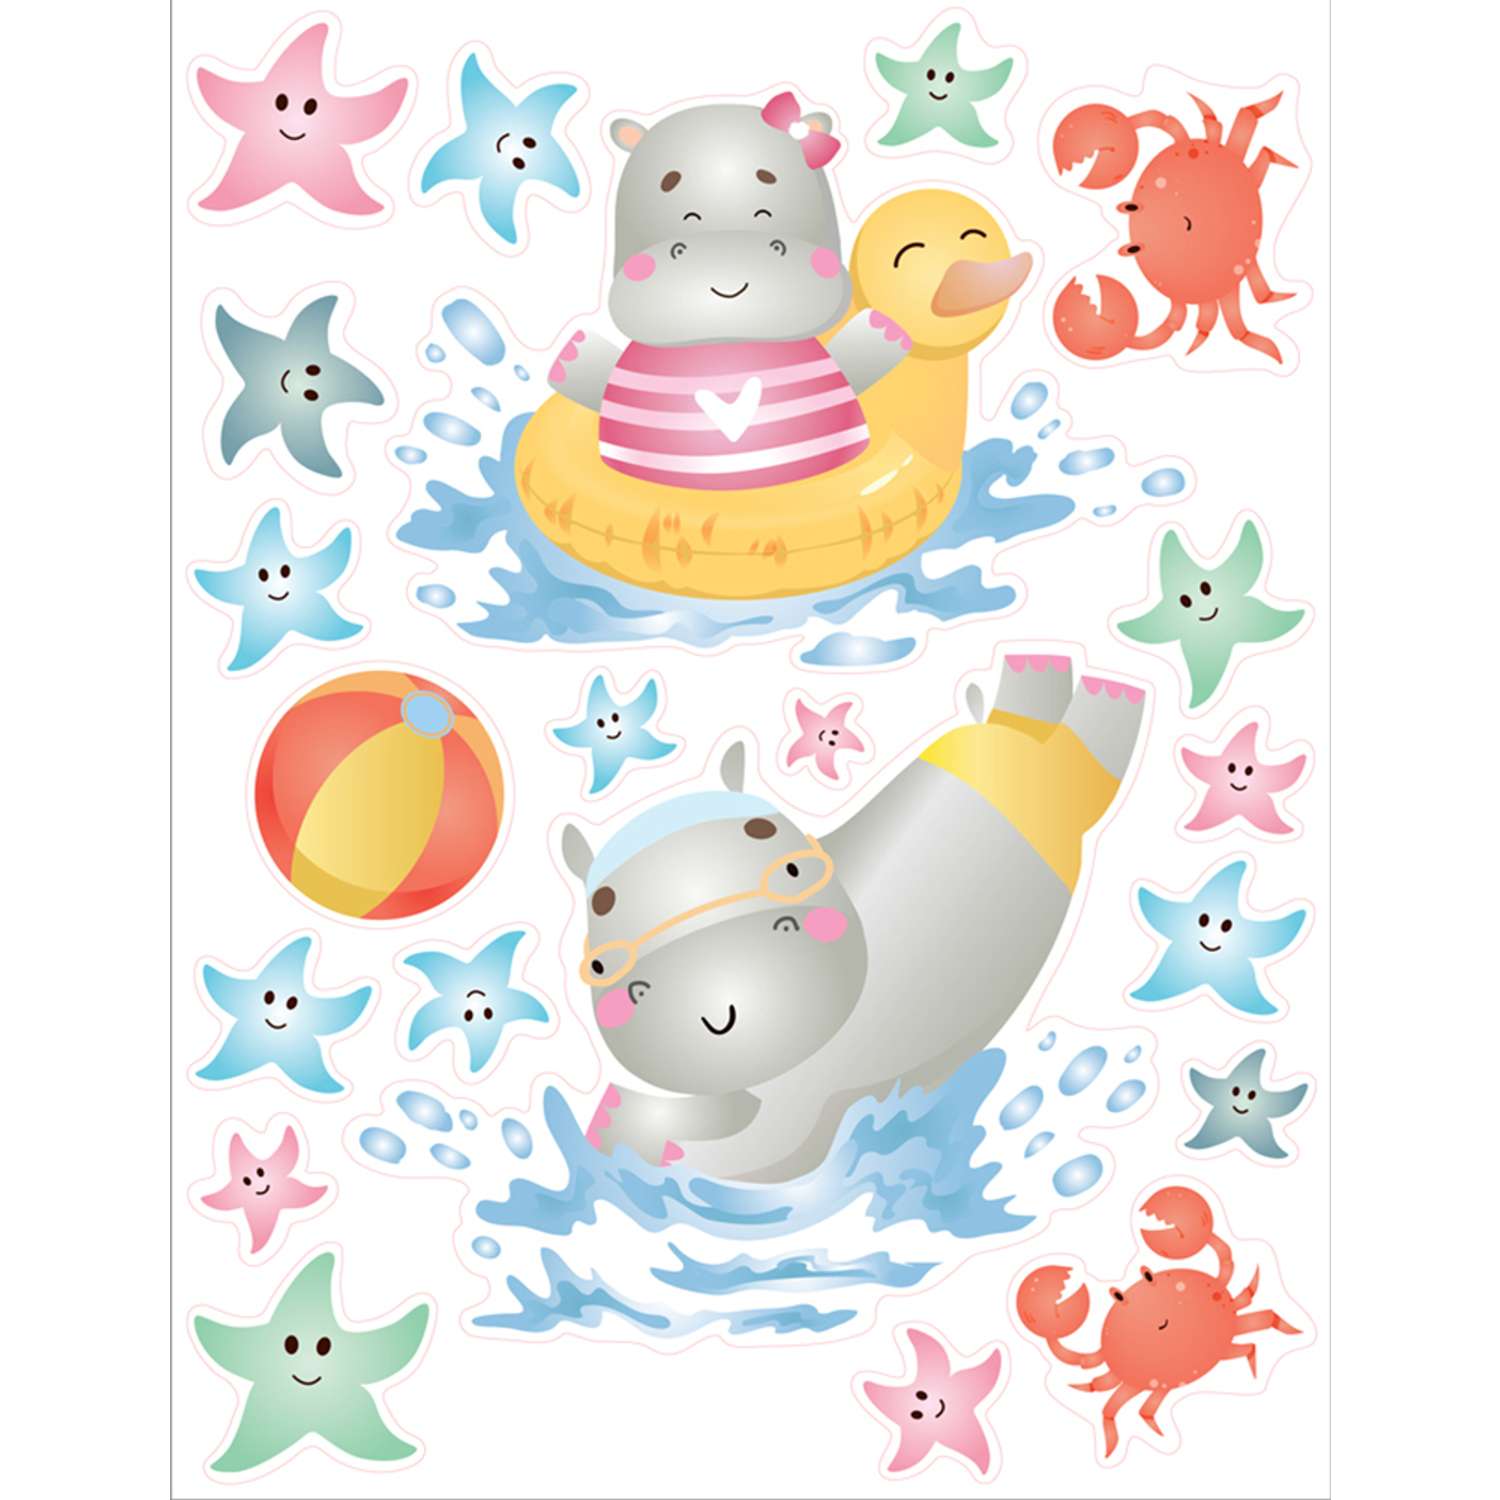 Наклейка оформительская ГК Горчаков ребенку в ванную комнату с рисунком бегемотики для декора - фото 1